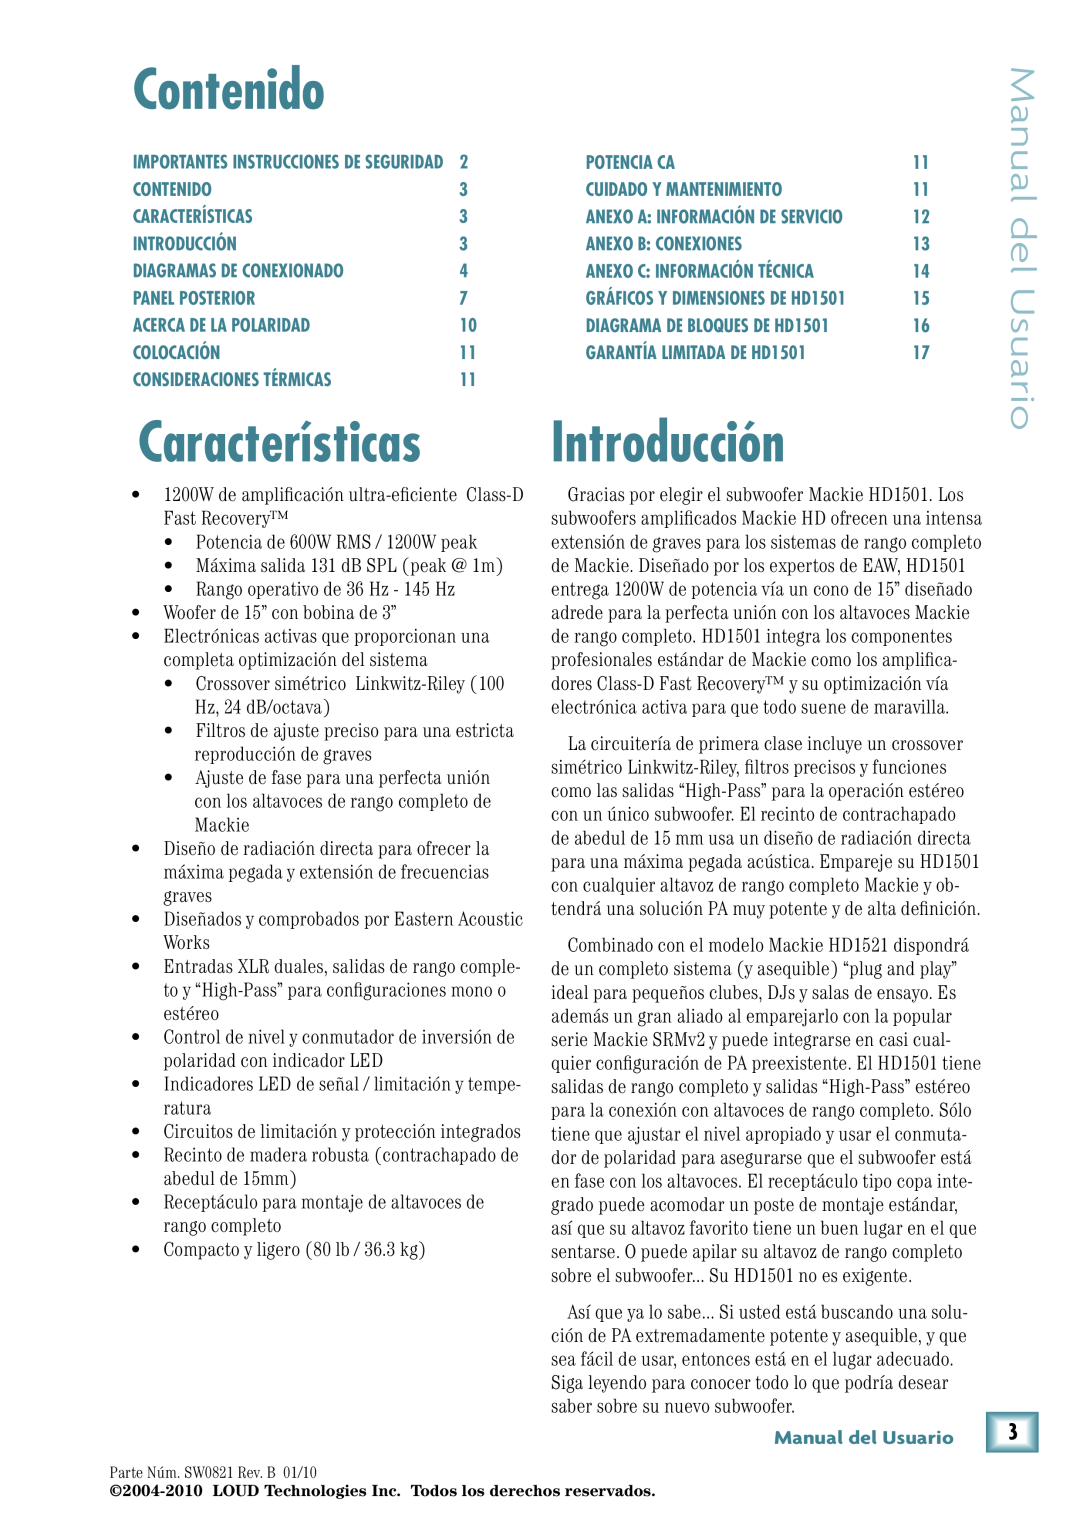 Mackie HD1501 manual Contenido, Introducción, Manual del Usuario, Características 